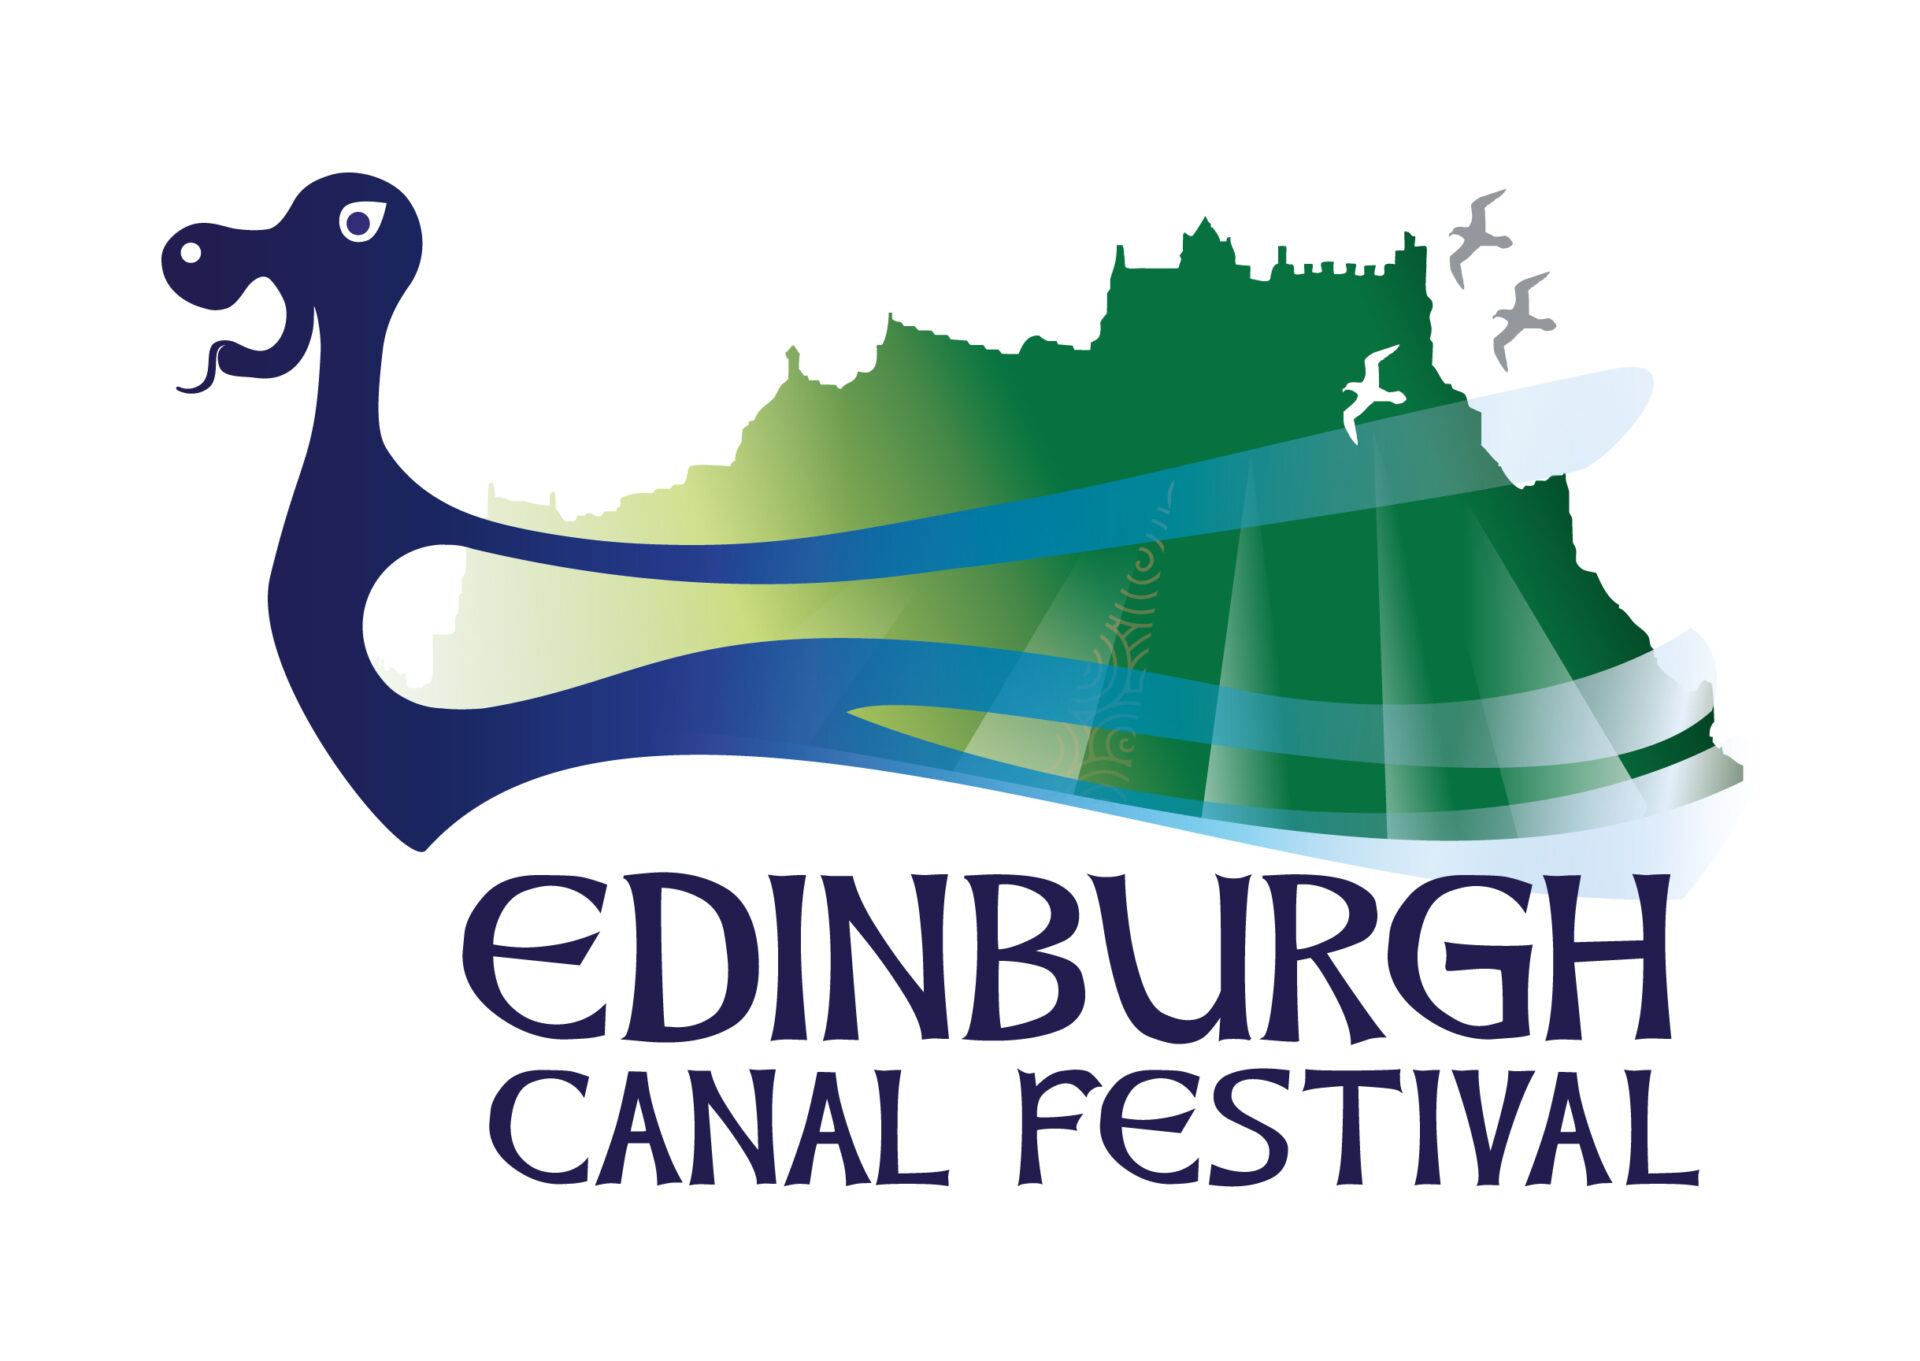 Edinburgh Canal Festival logo by helen wyllie